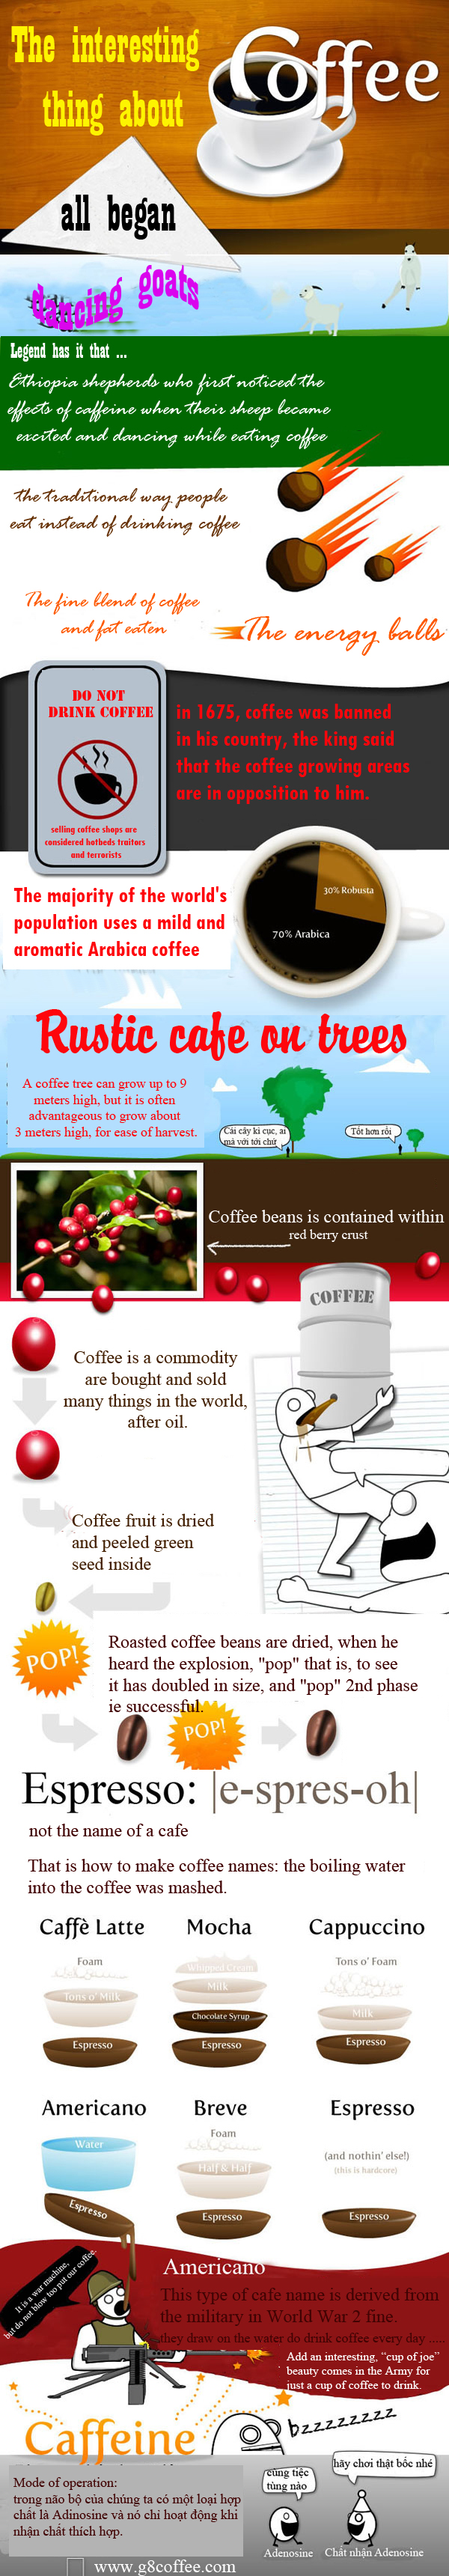 cà phê rang xay nguyên chất